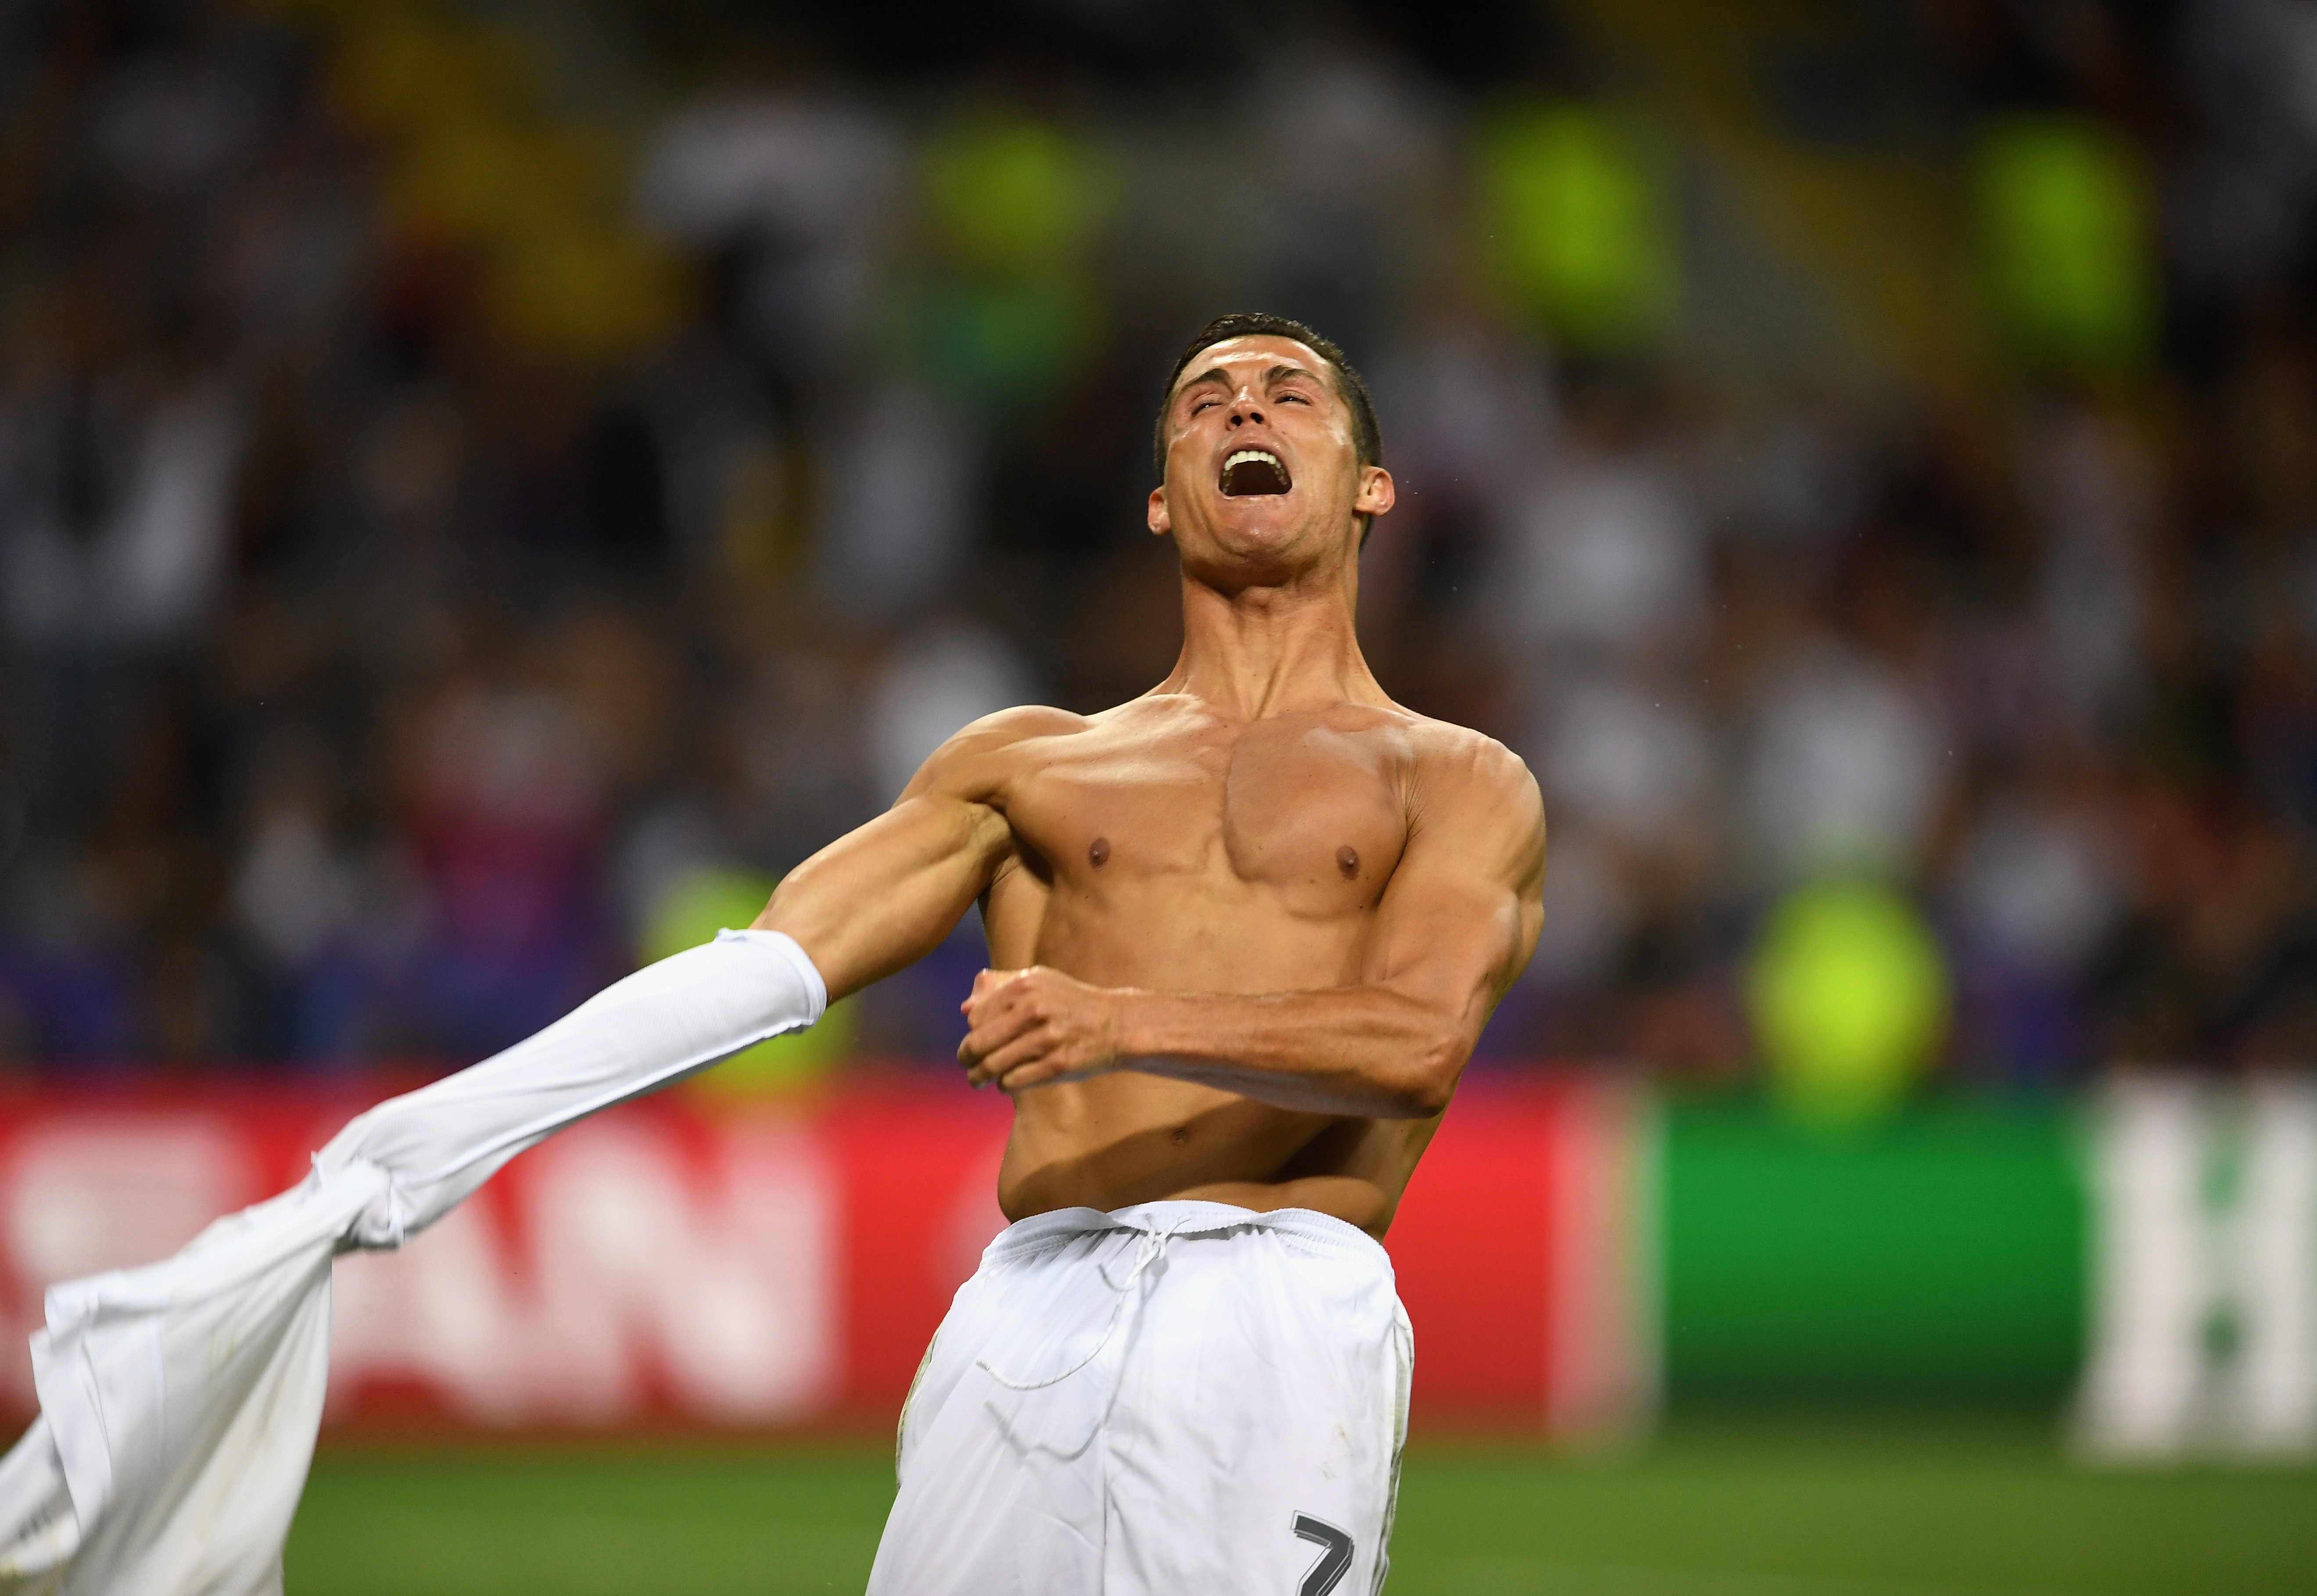 Para Cristiano Ronaldo, este es el gol más importante que ha marcado